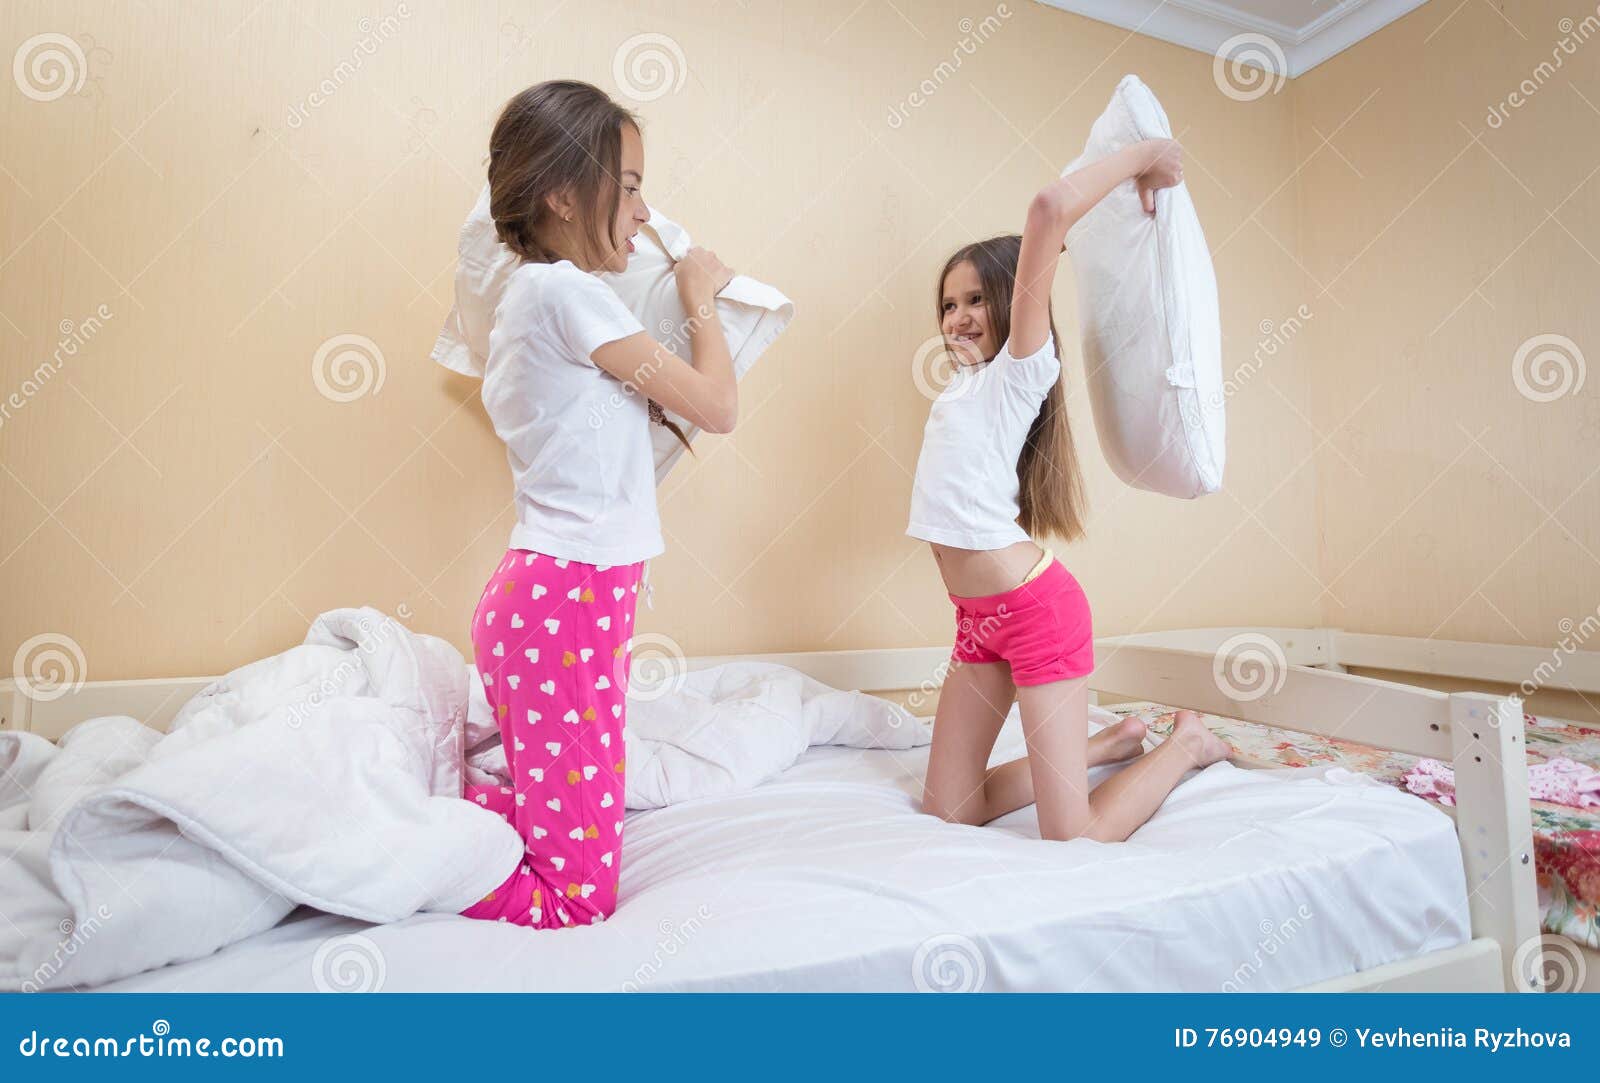 Пришел к сестре в кровать. Сестры в пижамах кровать. Пижама для подростка девочки. Сестра в пижаме. Кровать для девочки 12 лет.